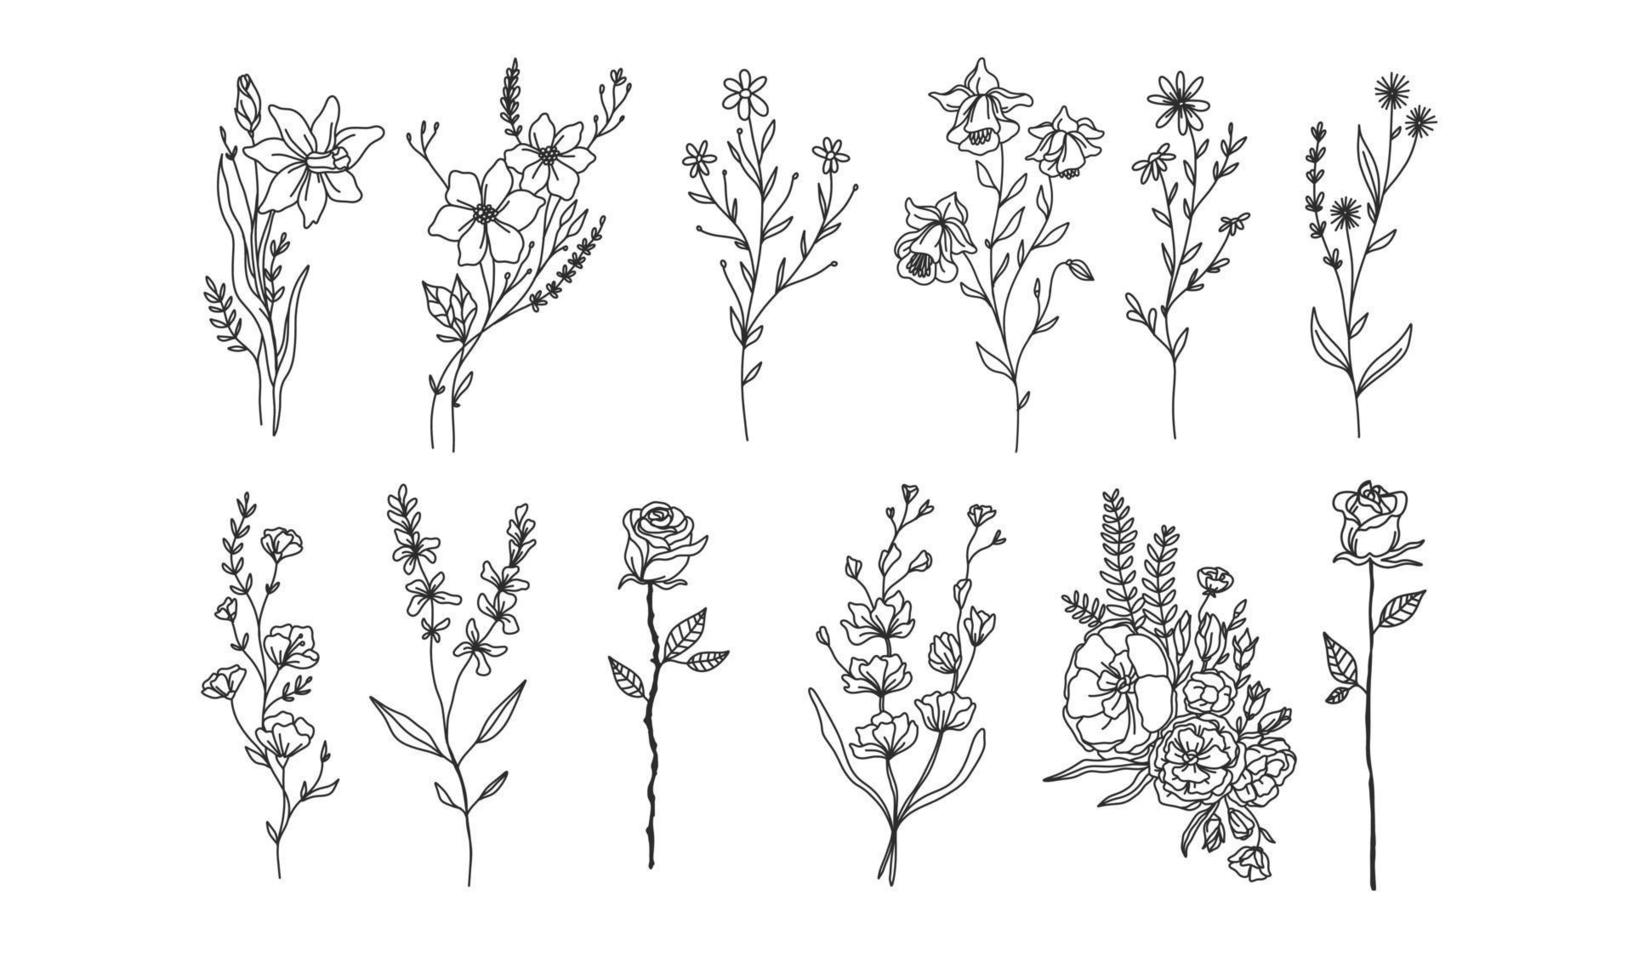 uppsättning handritade blomelement för din design, löv och blommor illustration för att skapa romantisk eller vintage design, växt isolerad grafik mycket enkelt lägga till ditt designprojekt vektor